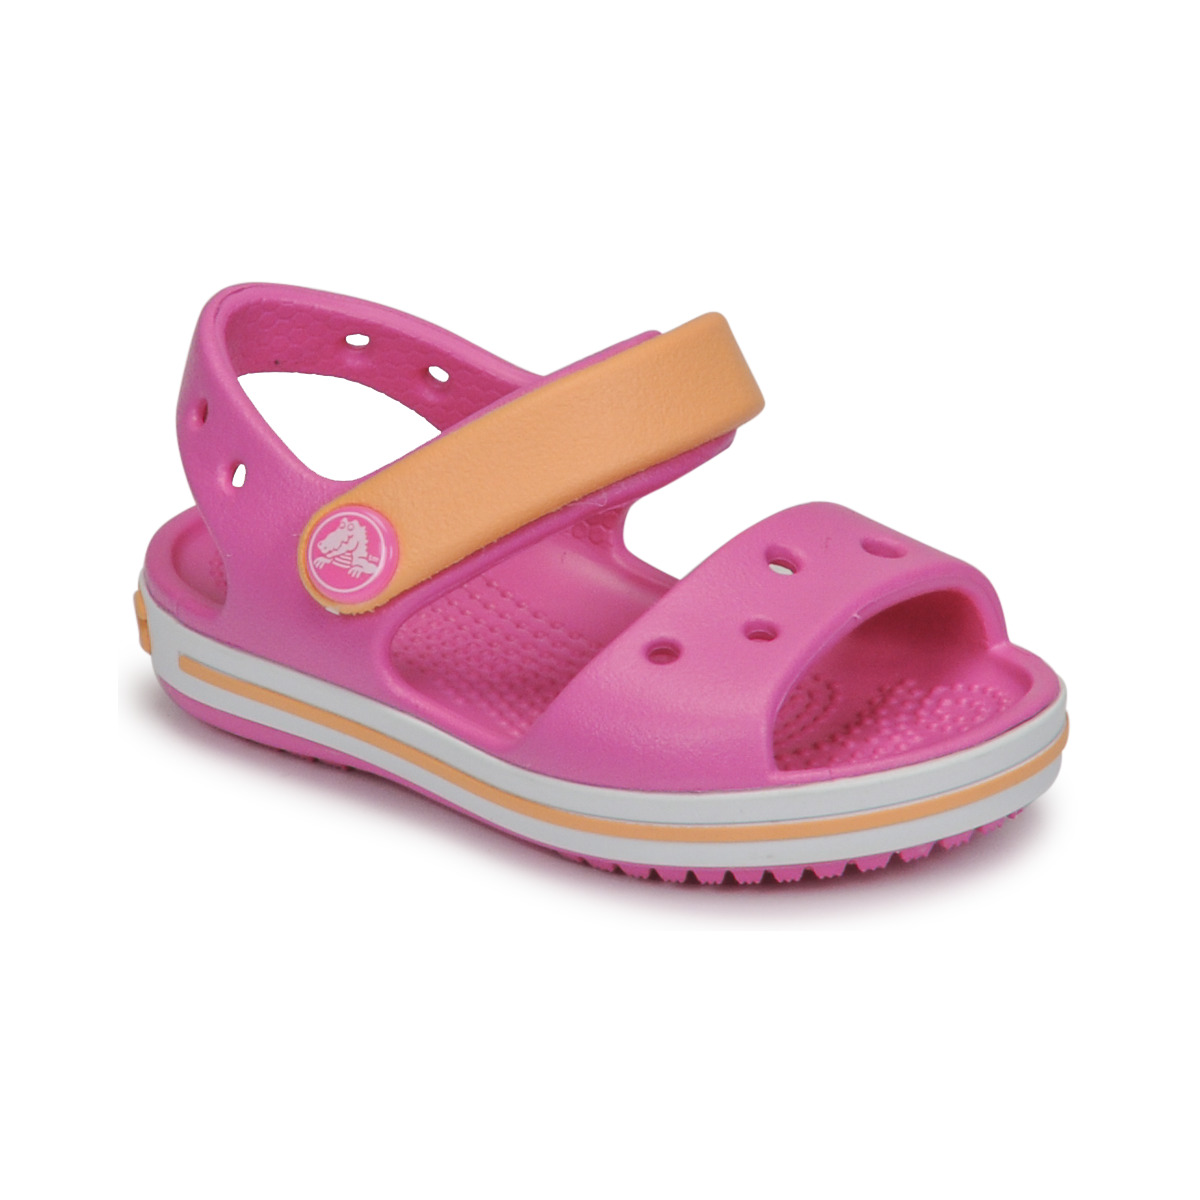 Topánky Dievča Sandále Crocs CROCBAND SANDAL KIDS Ružová / Oranžová